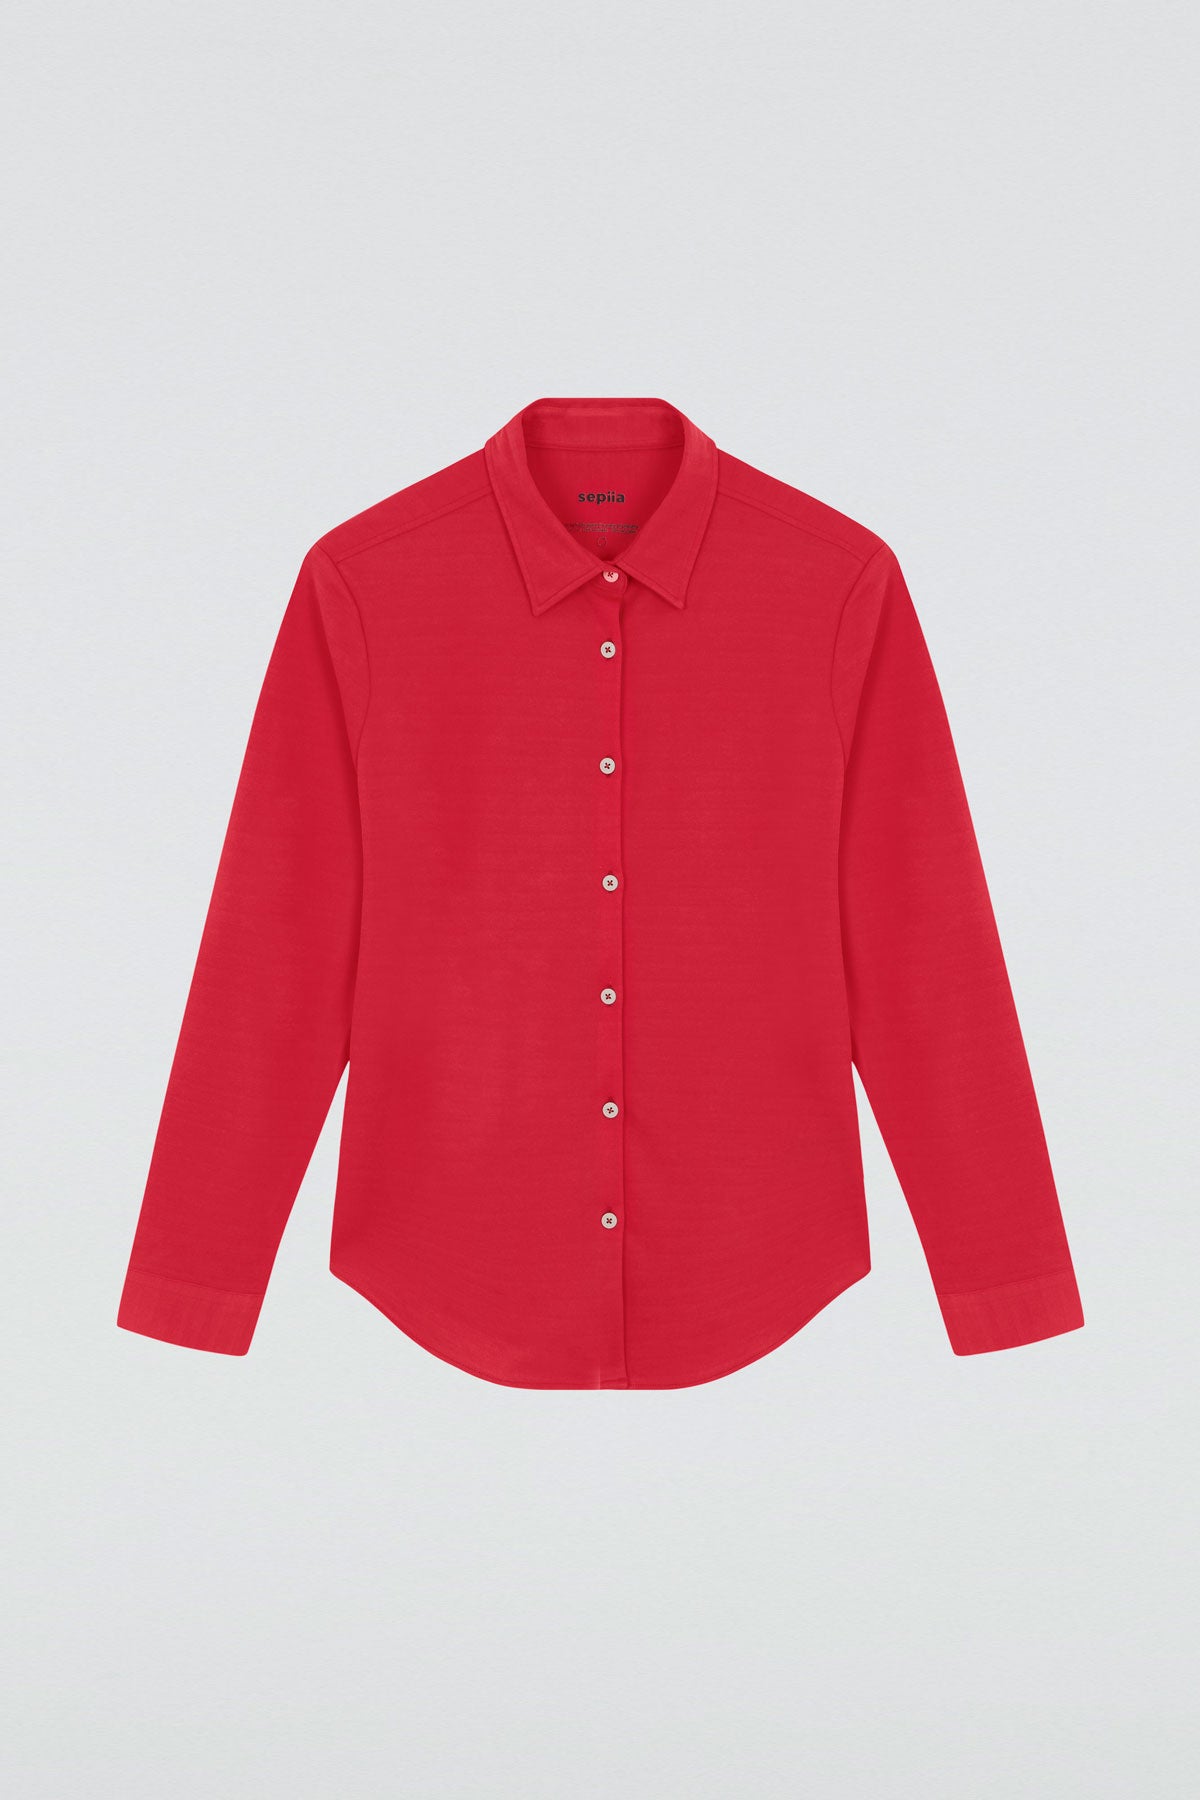 Camisa rojo atlanta oversize de Sepiia, elegante y resistente a manchas y arrugas. Foto plano